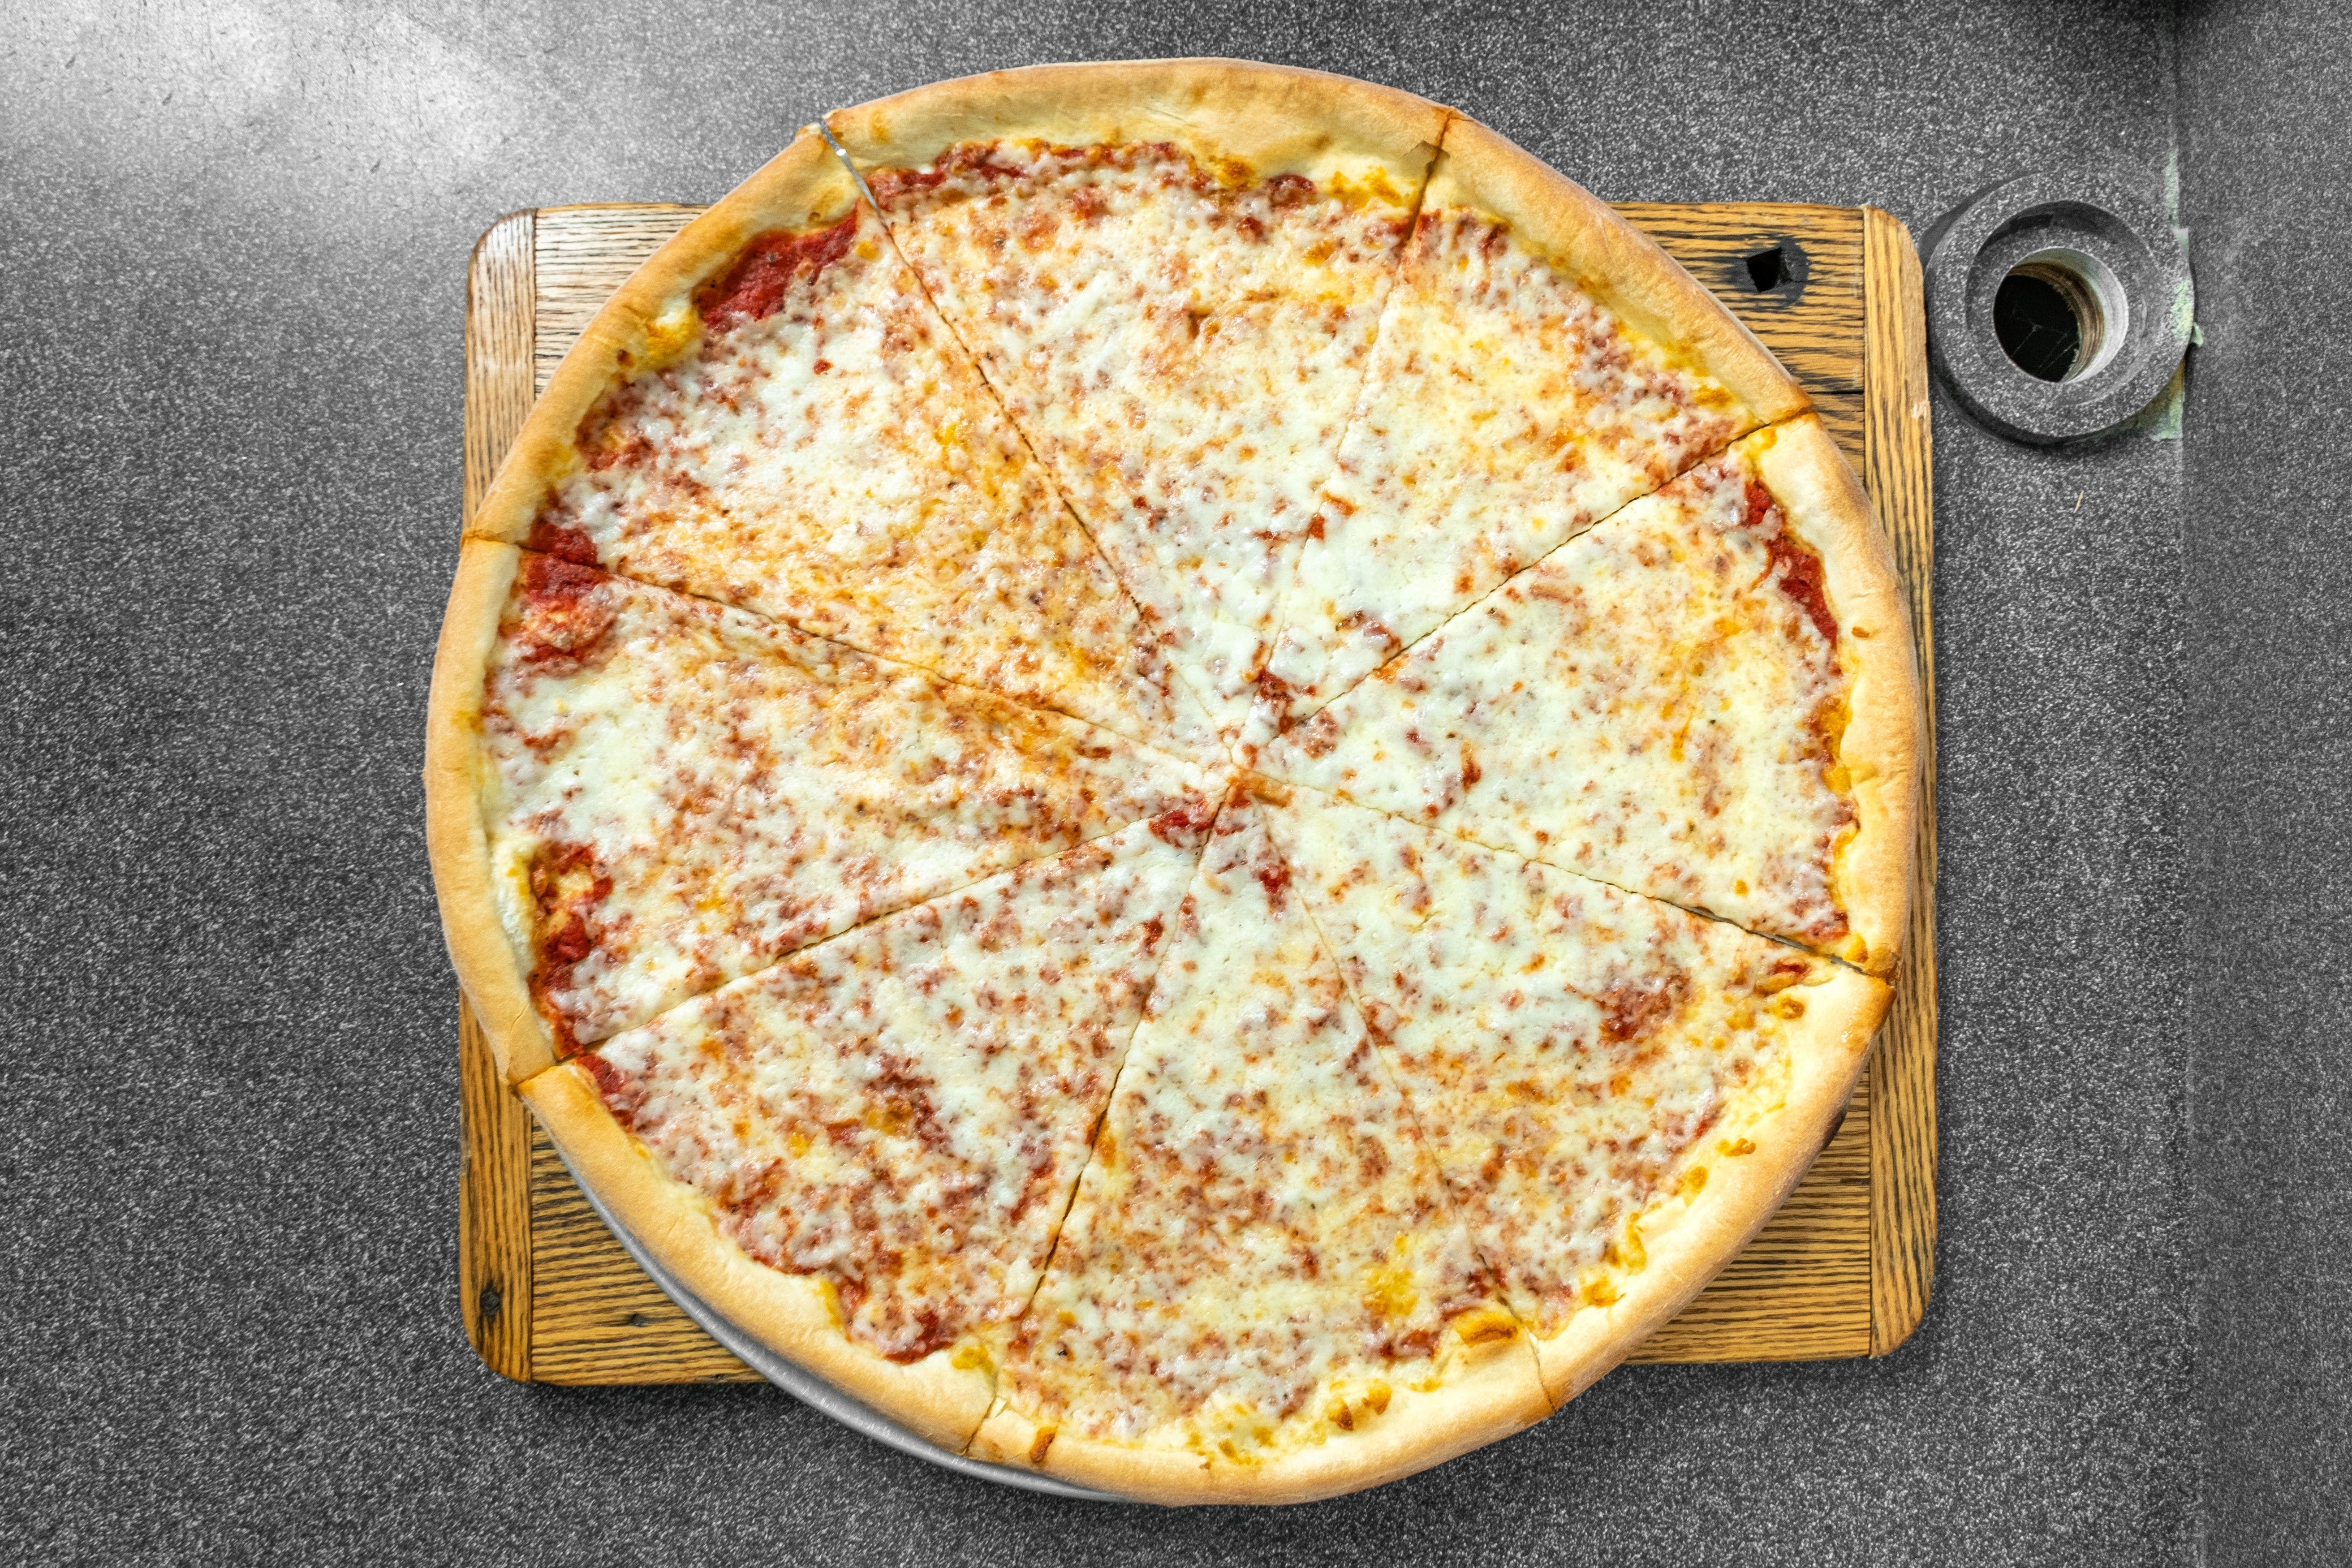 Magik Flavor Pizza & Deli (Formerly Pittsgrove Pizzeria) hero